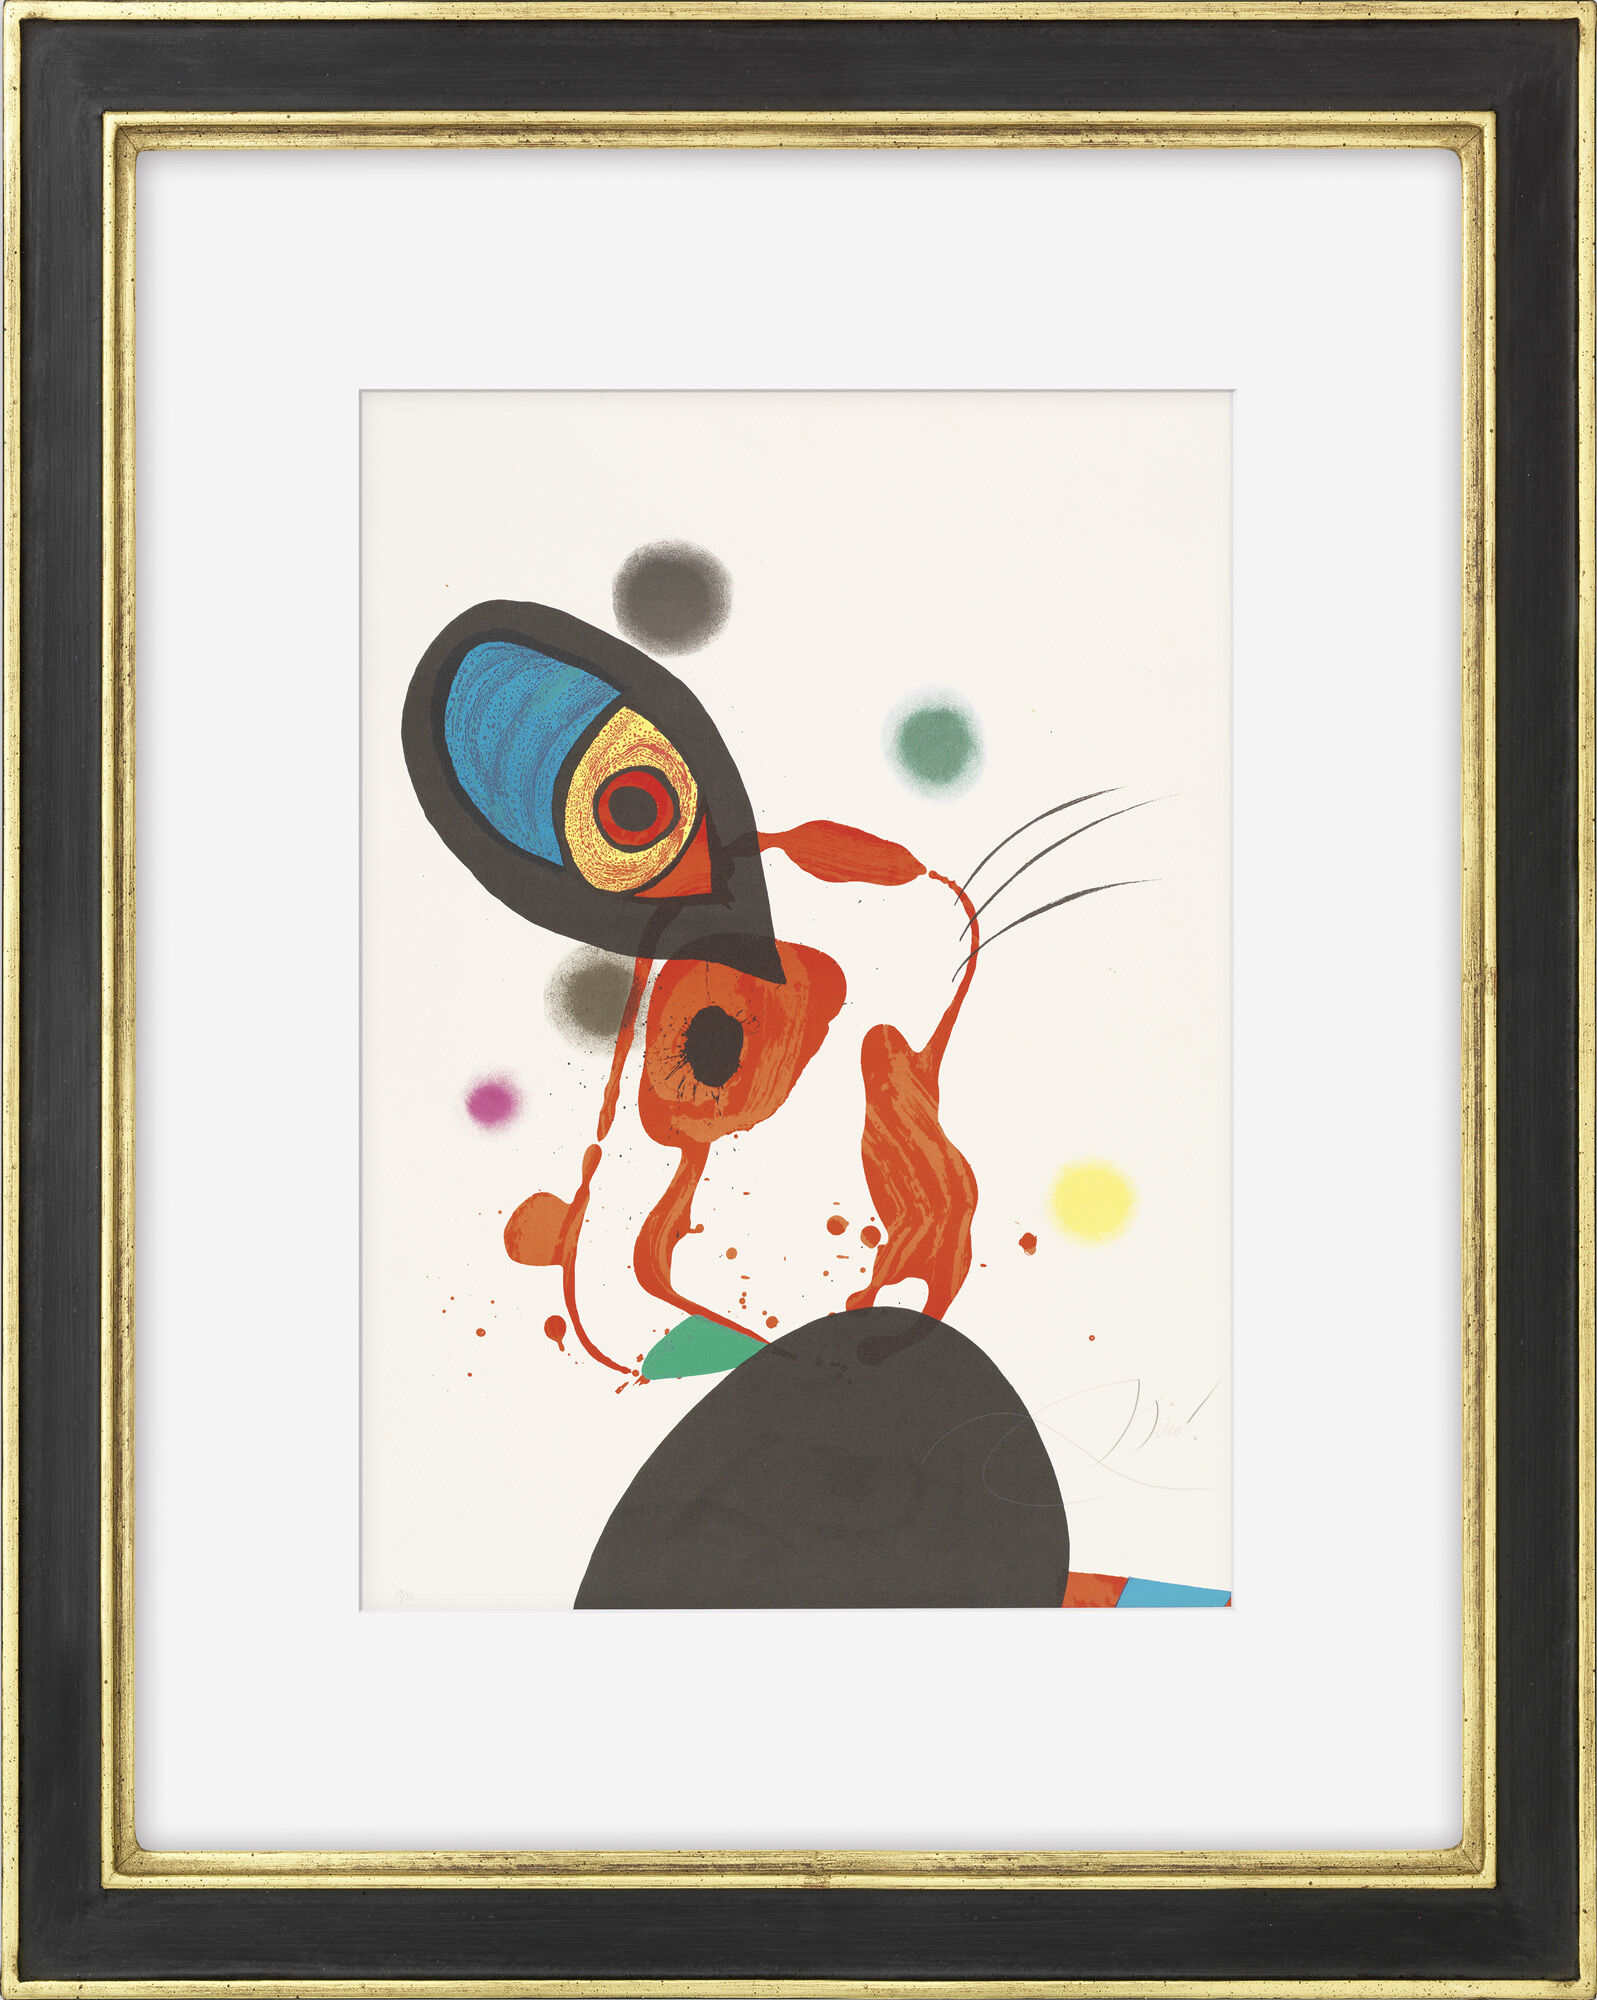 Picture "L'Eunuque Impérial" (1975) by Joan Miró